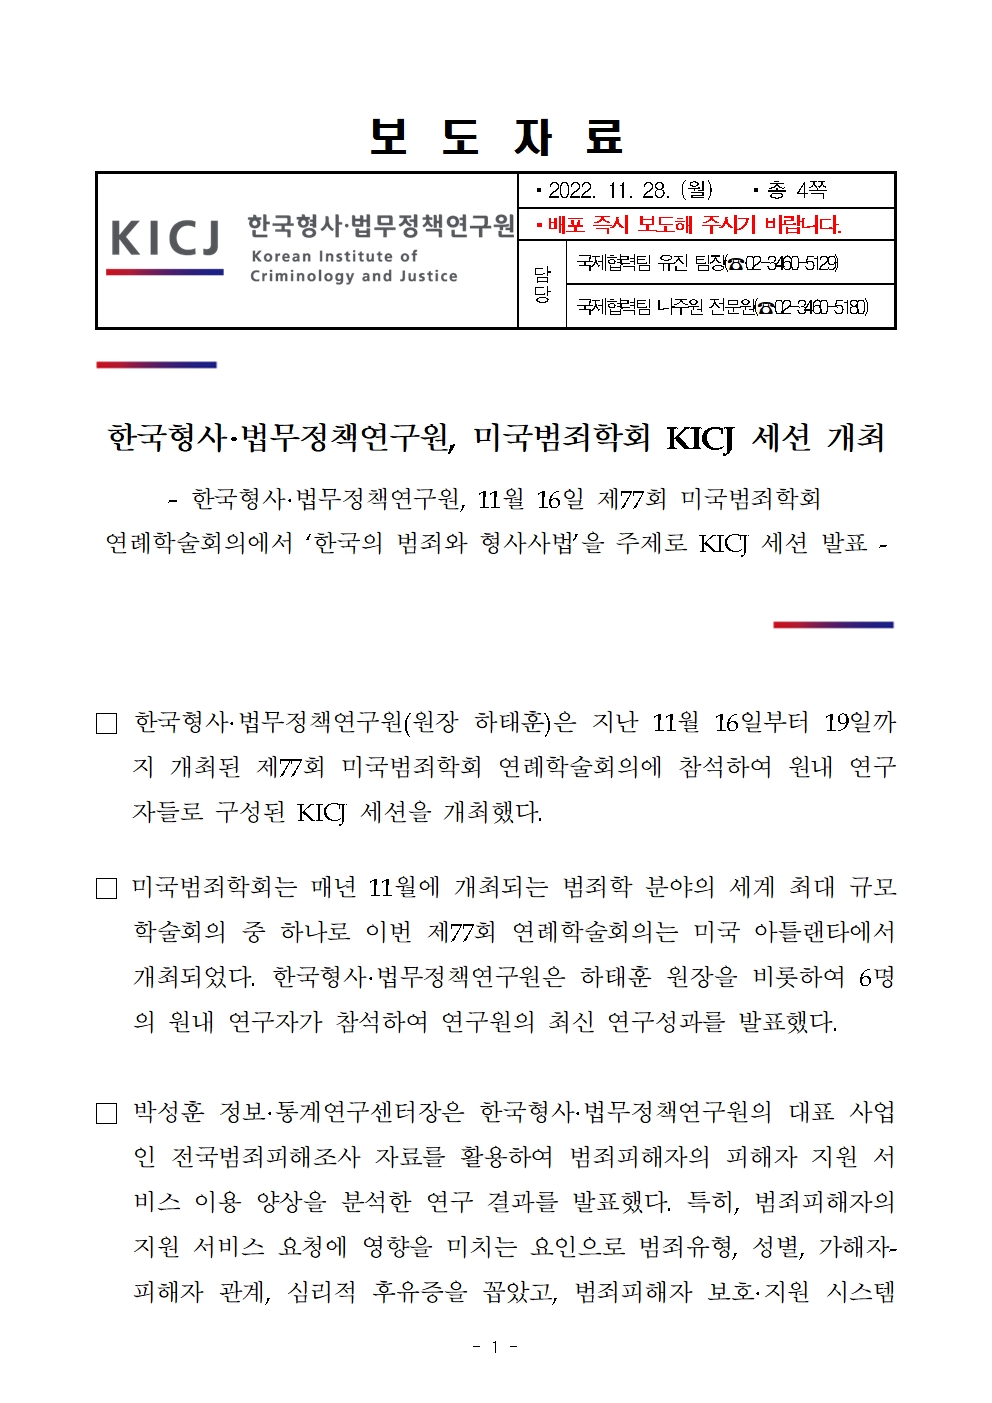 한국형사·법무정책연구원 미국범죄학회 KICJ 세션 개최 자세한 내용은 pdf파일 참조